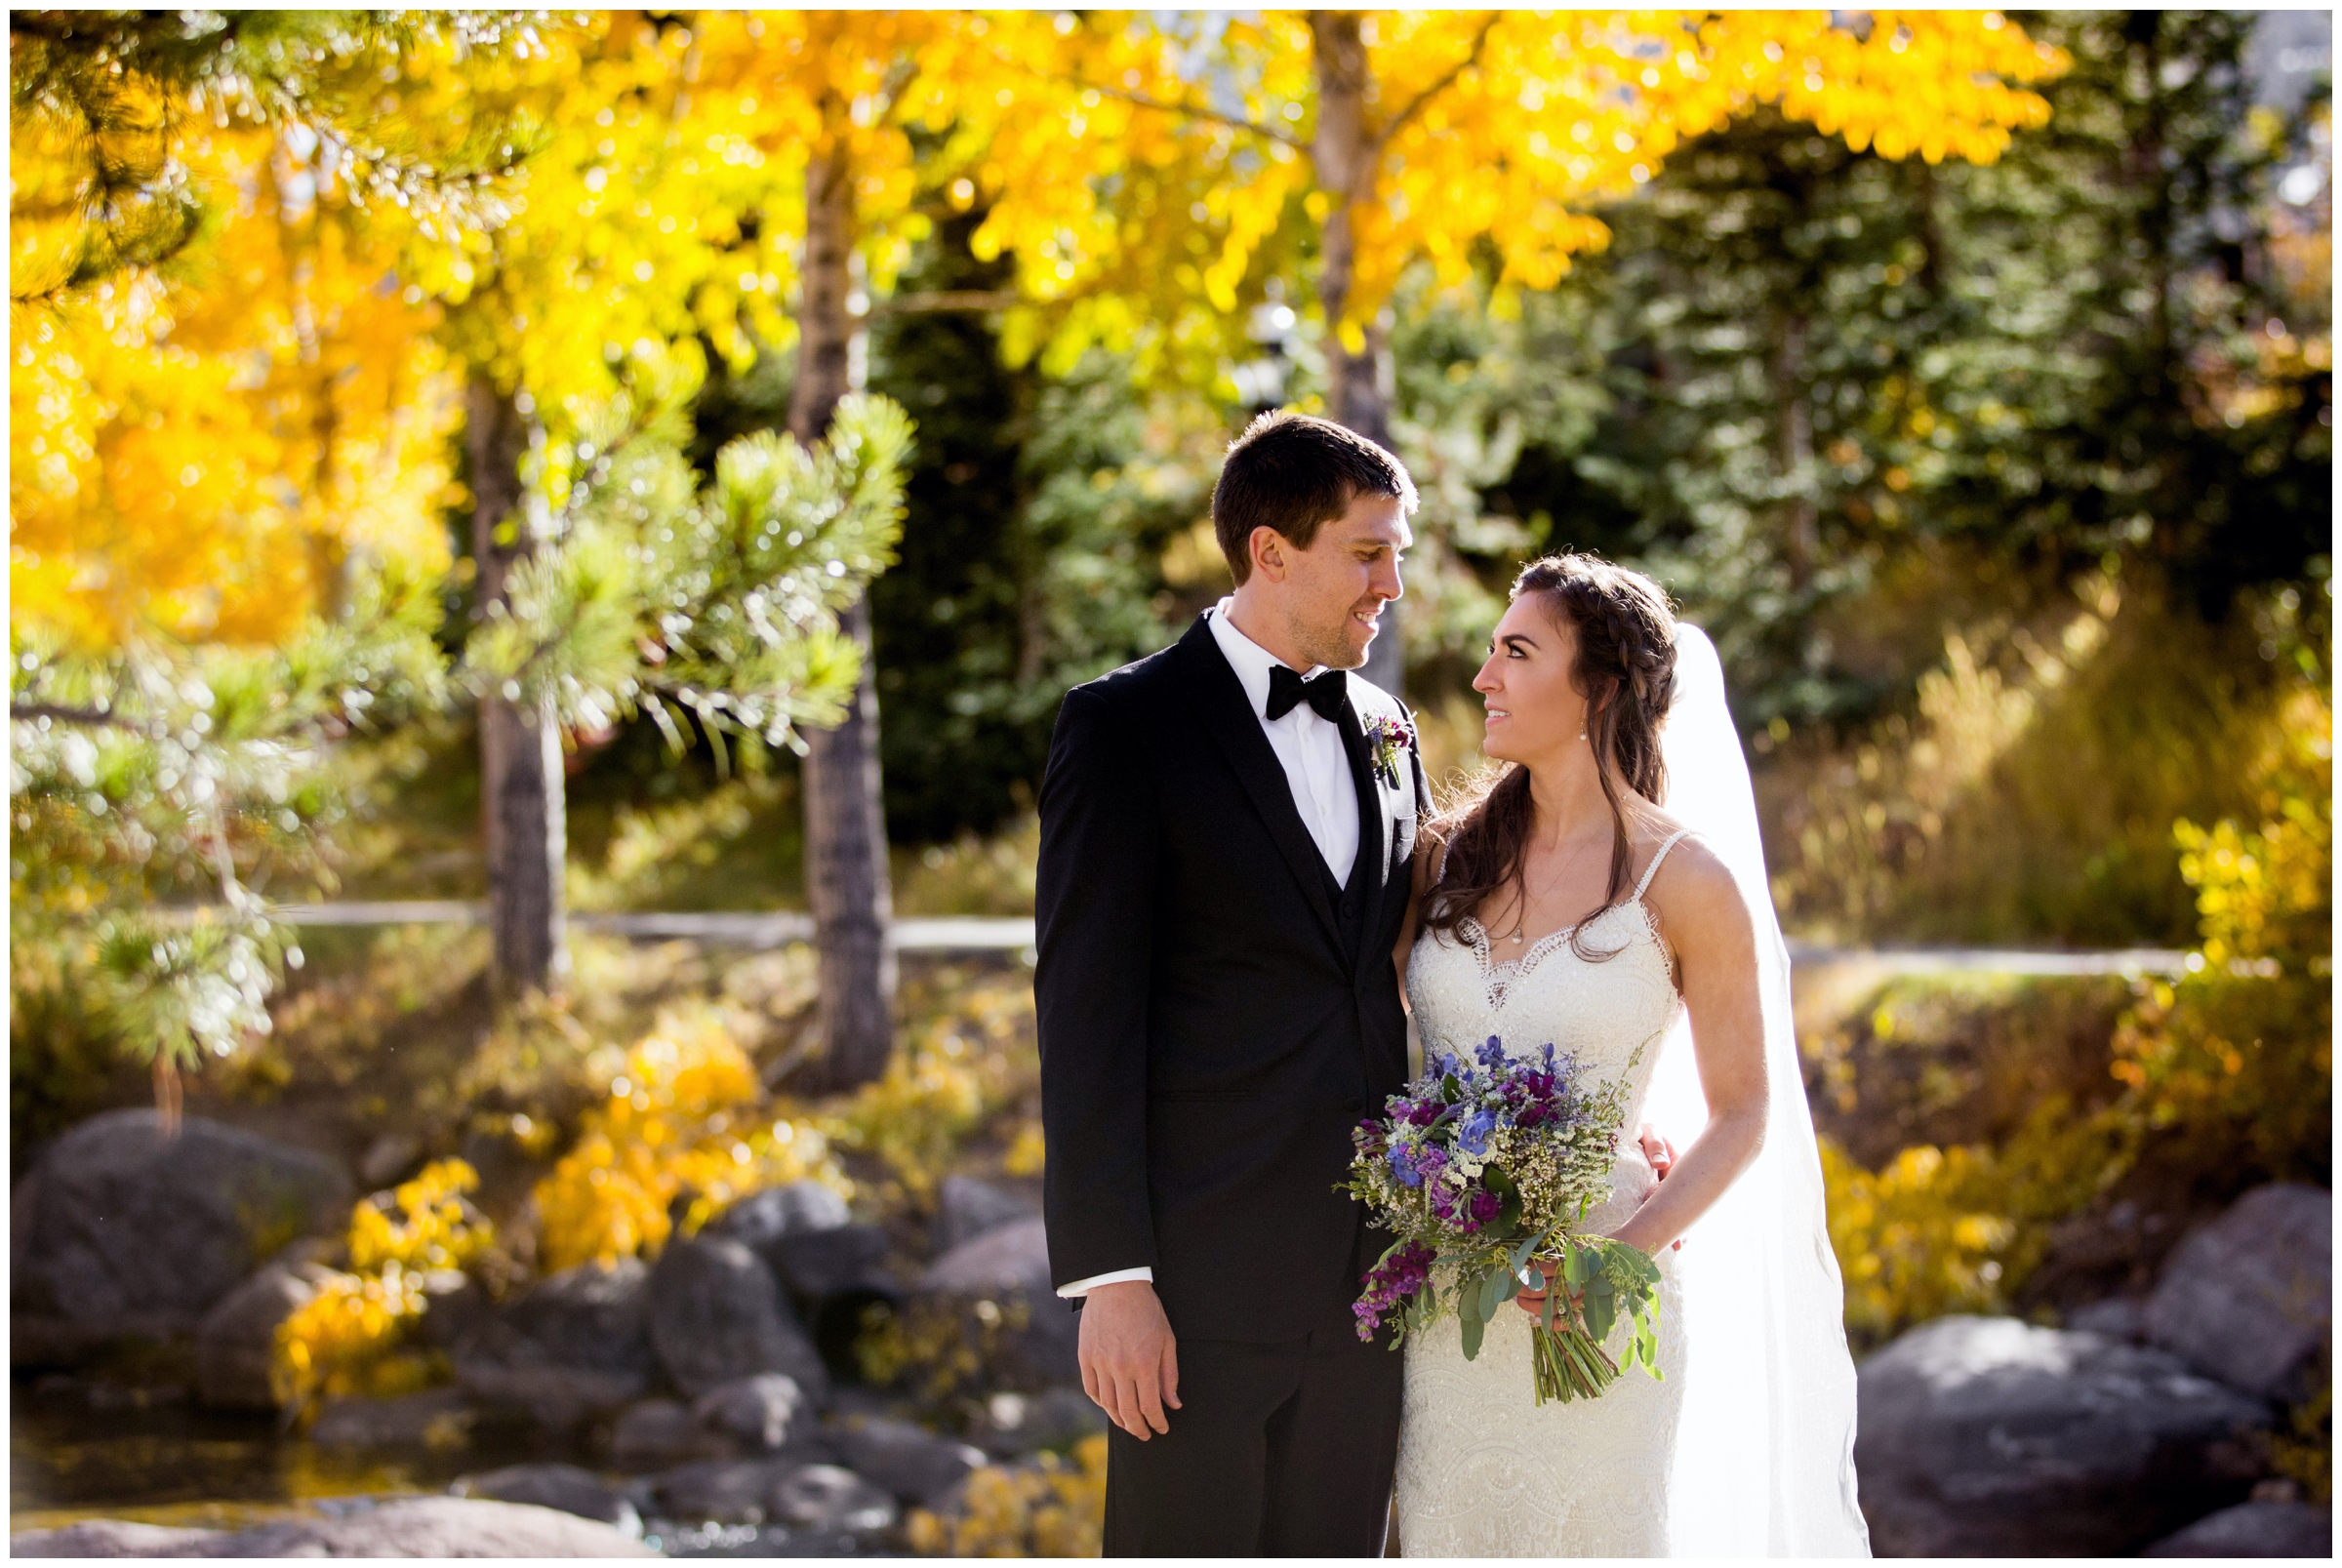 BlueSky Breckenridge wedding photos by Colorado mountain photographer Plum Pretty Photography